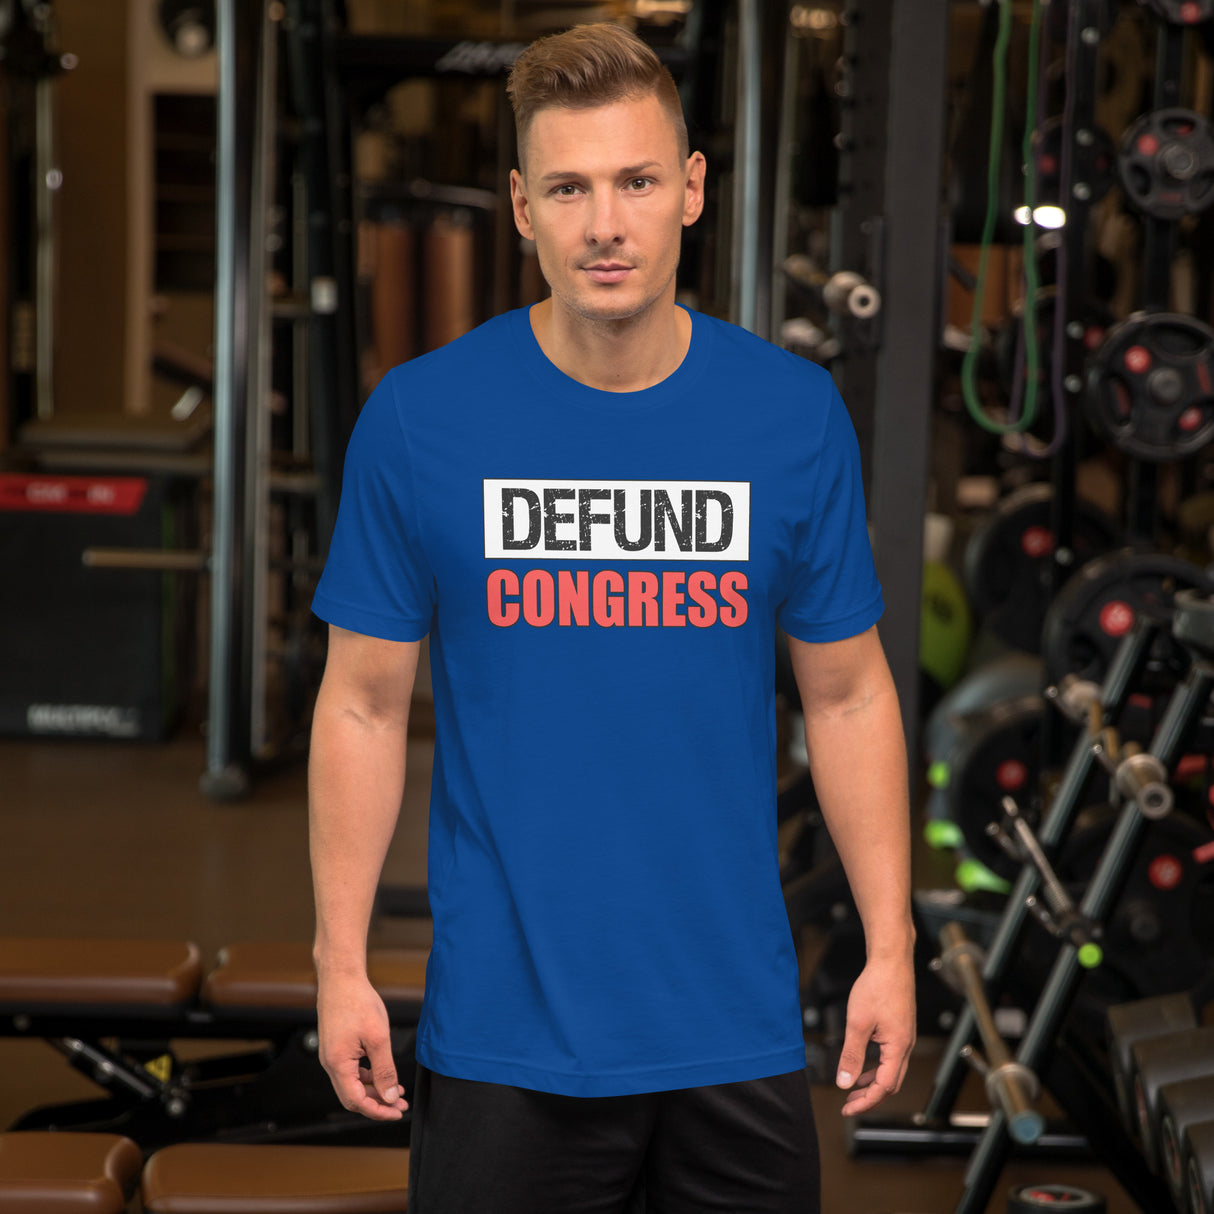 Defund Congress Men's Shirt